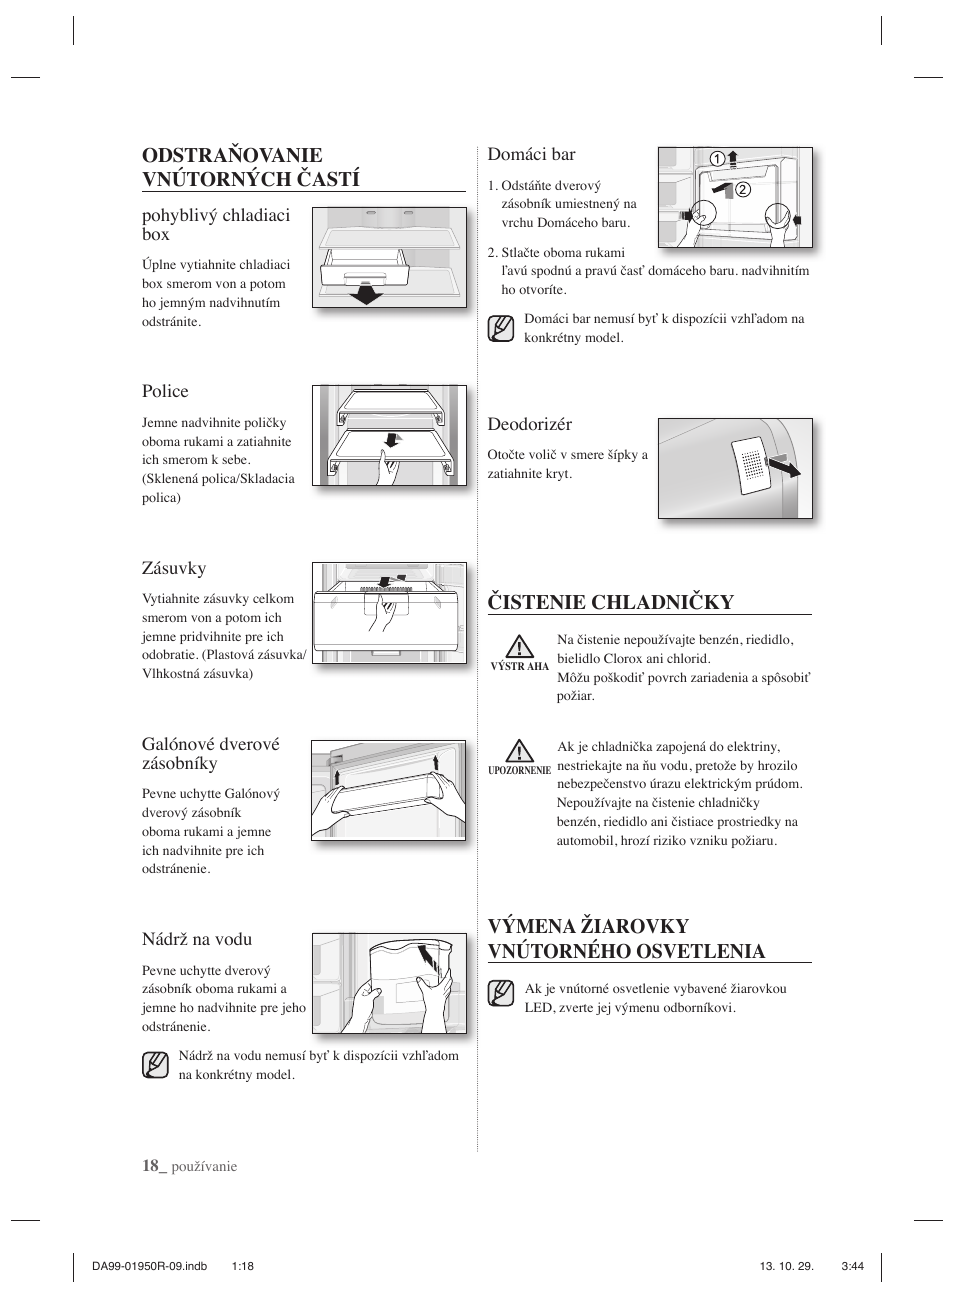 Odstraňovanie vnútorných častí, Čistenie chladničky, Výmena žiarovky  vnútorného osvetlenia | Samsung RR82PHIS User Manual | Page 106 / 200 |  Original mode